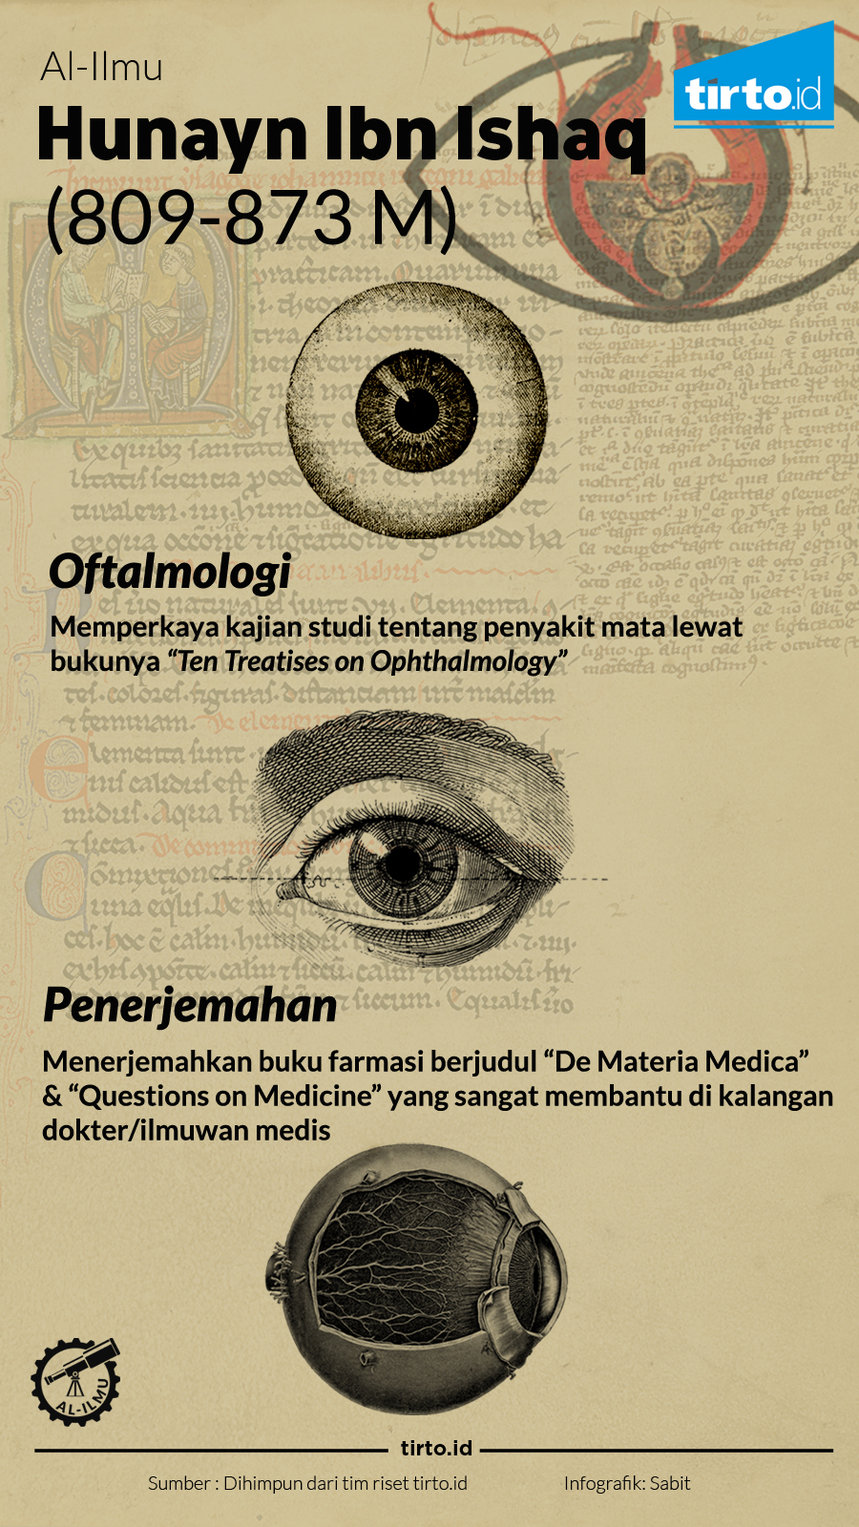 Infografik Hunayn Ibn Ishaq al ilmu